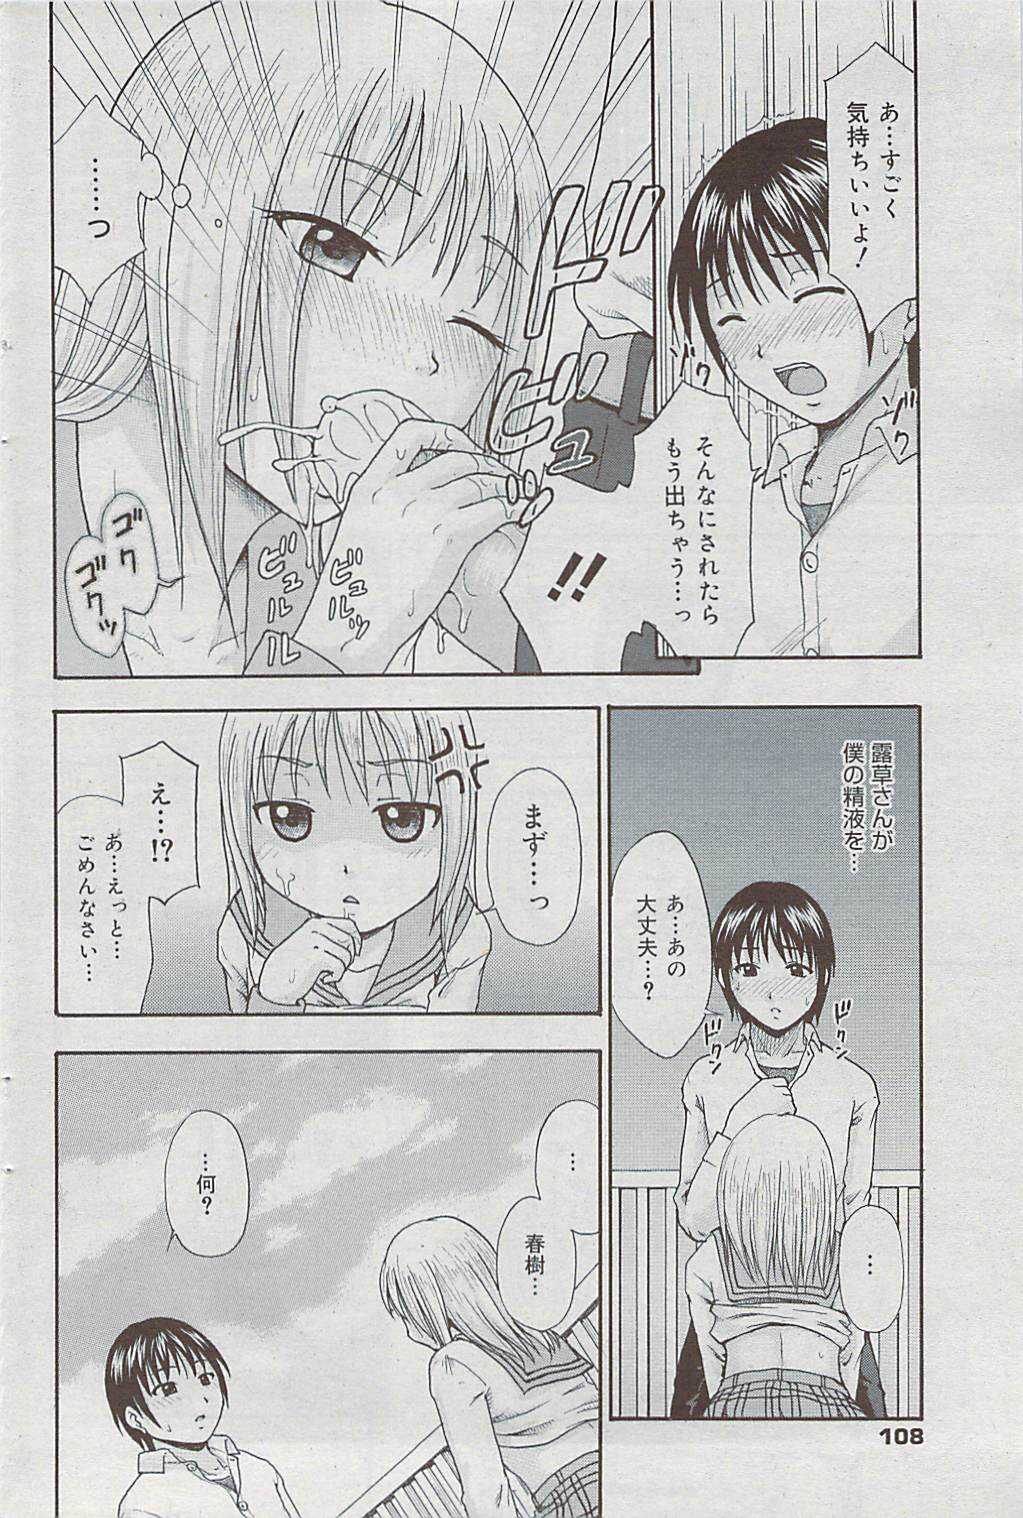 Manga Bangaichi 2009-04 Vol. 236 漫画ばんがいち 2009年4月号 VOL.236